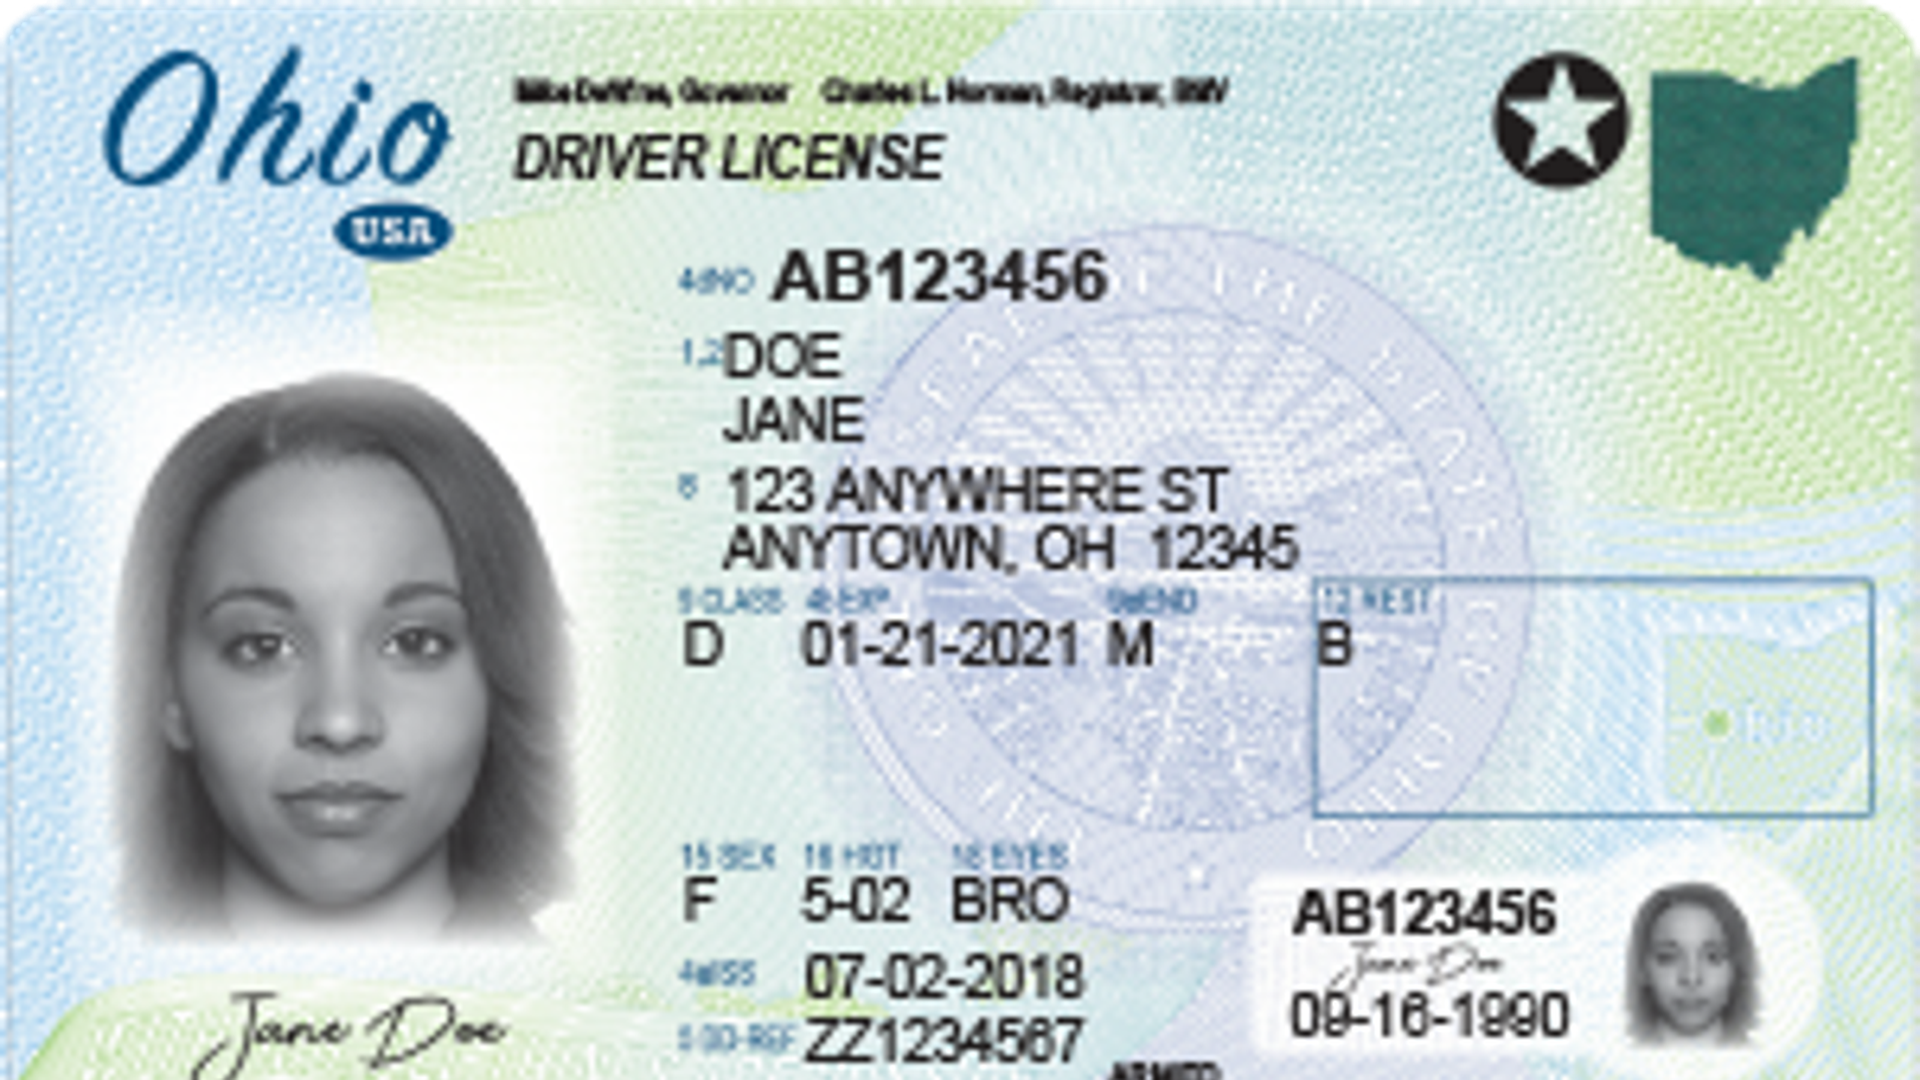 A sample Ohio driver's license.